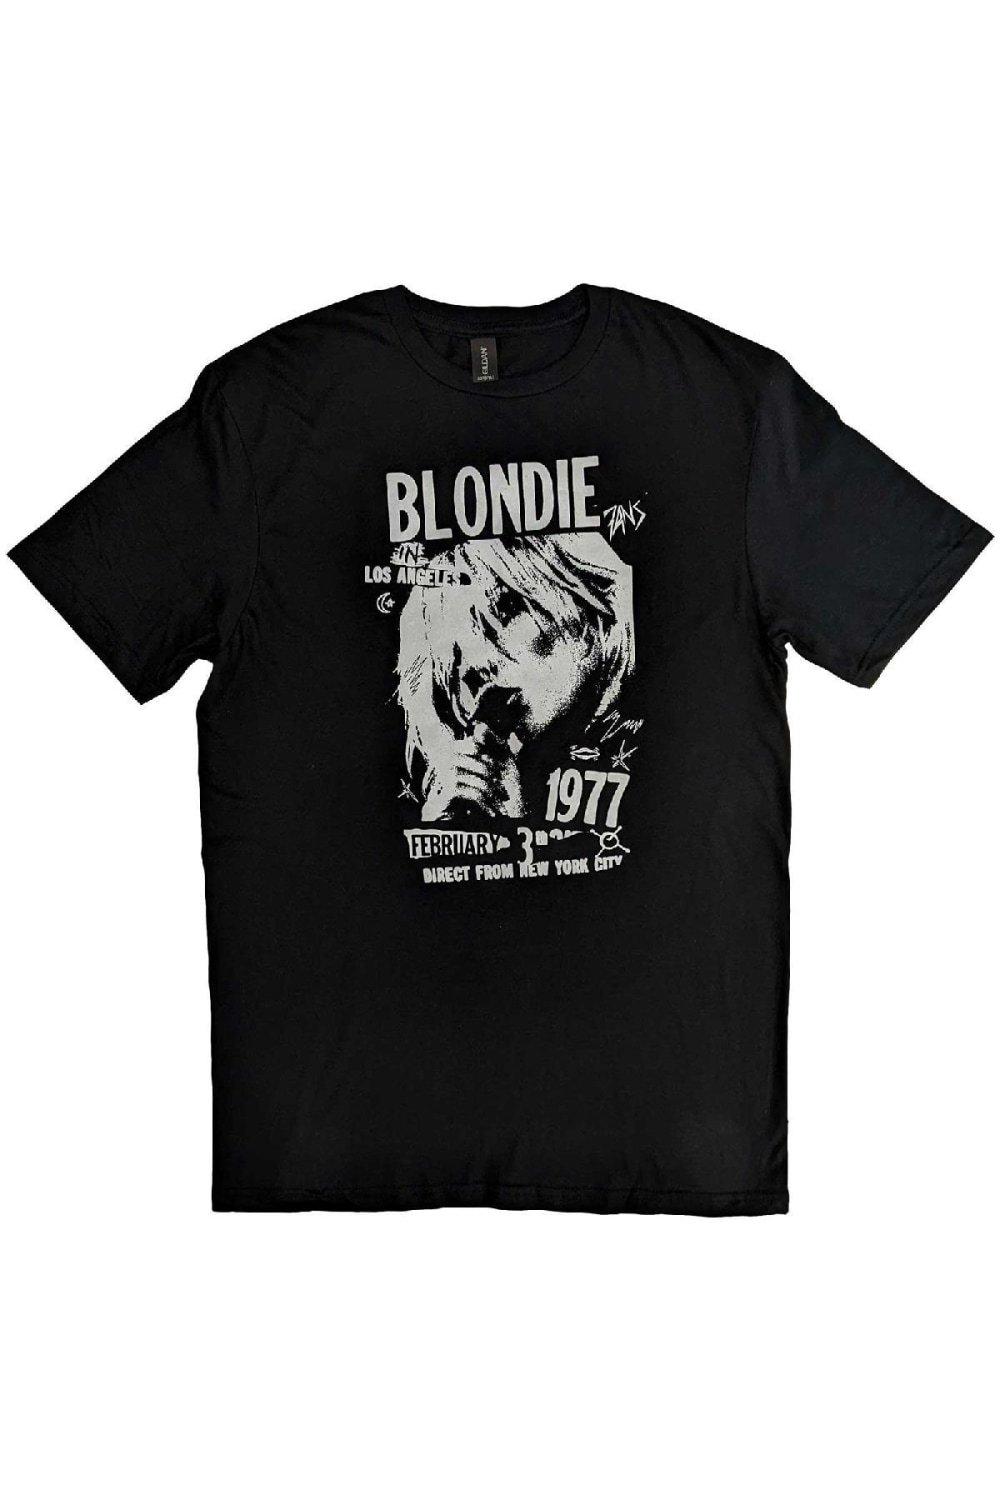 Винтажная хлопковая футболка 1977 года Blondie, черный синяя звезда цифровая версия цифровая версия